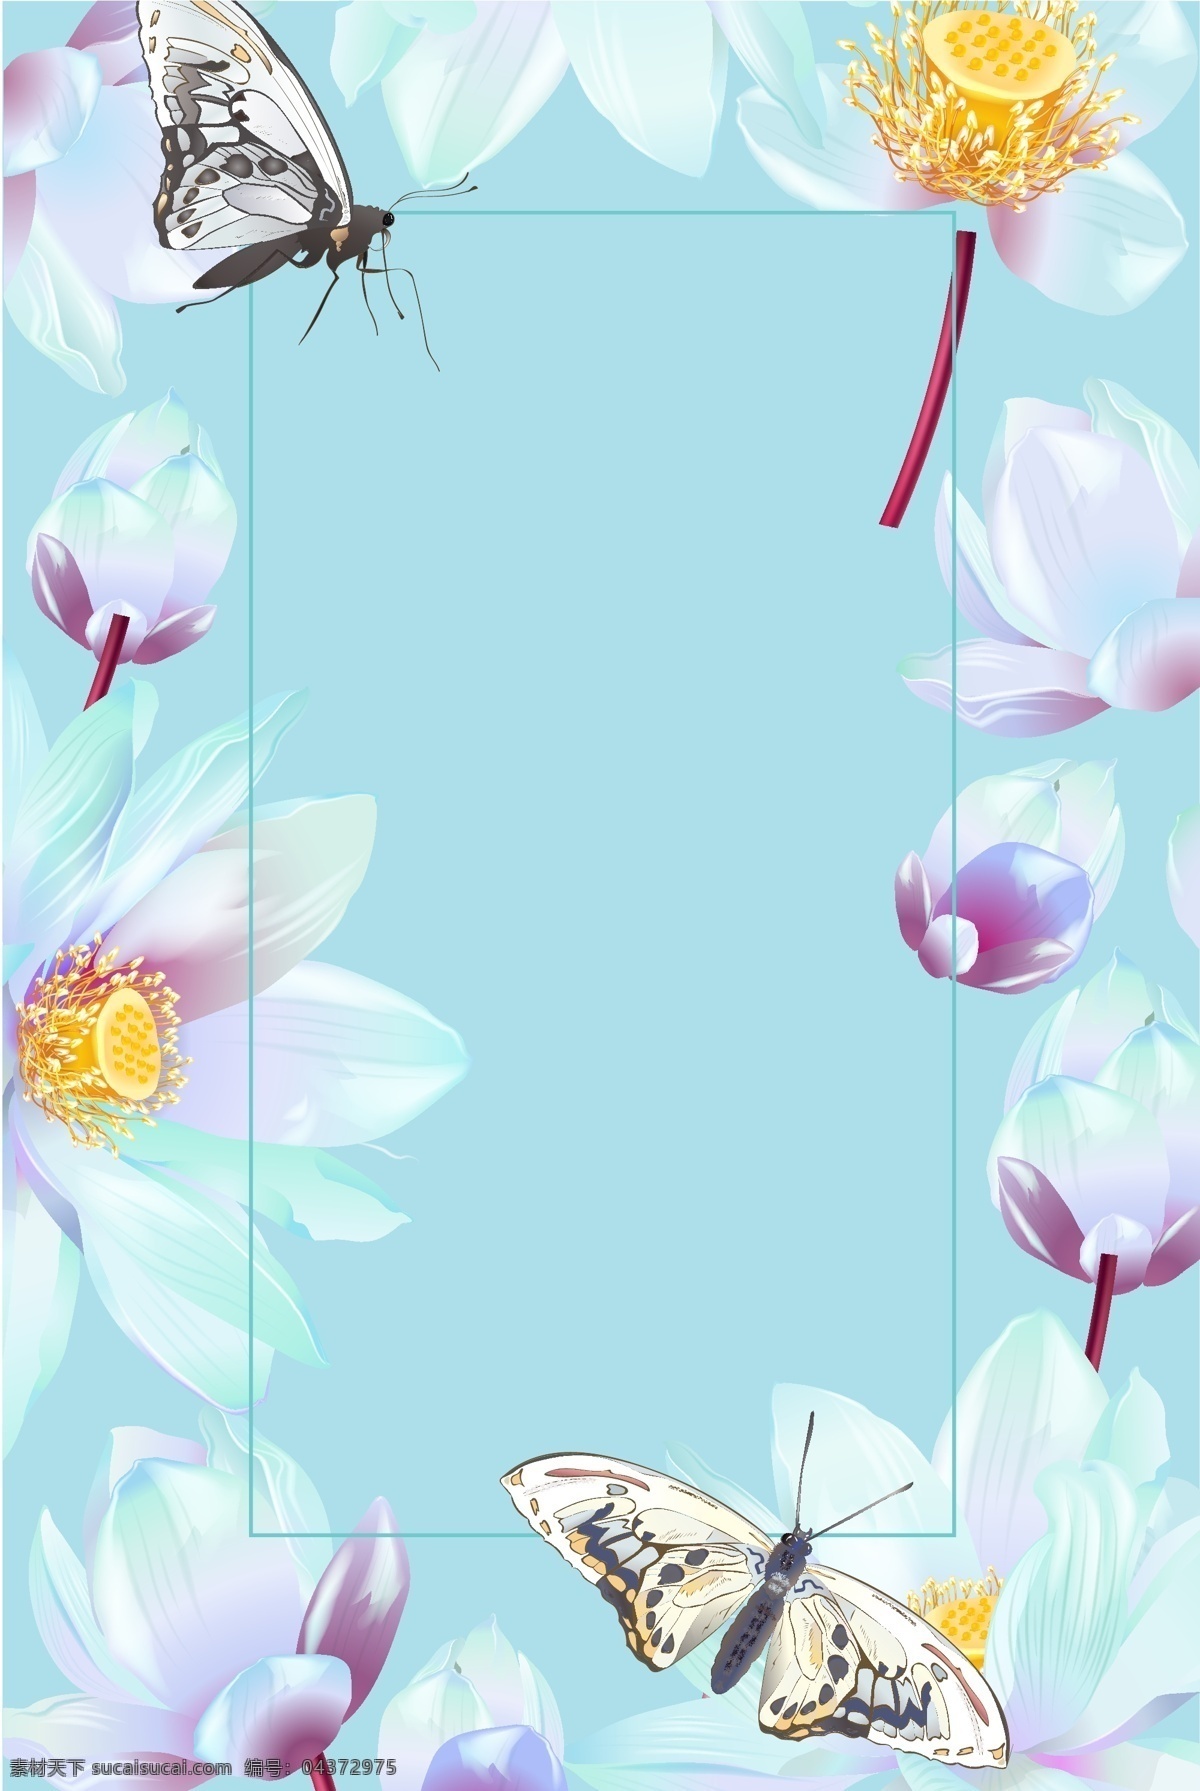 蓝色 手绘 淡雅 花朵 边框 小清新 素雅 清新 花卉 植物 蝴蝶 背景